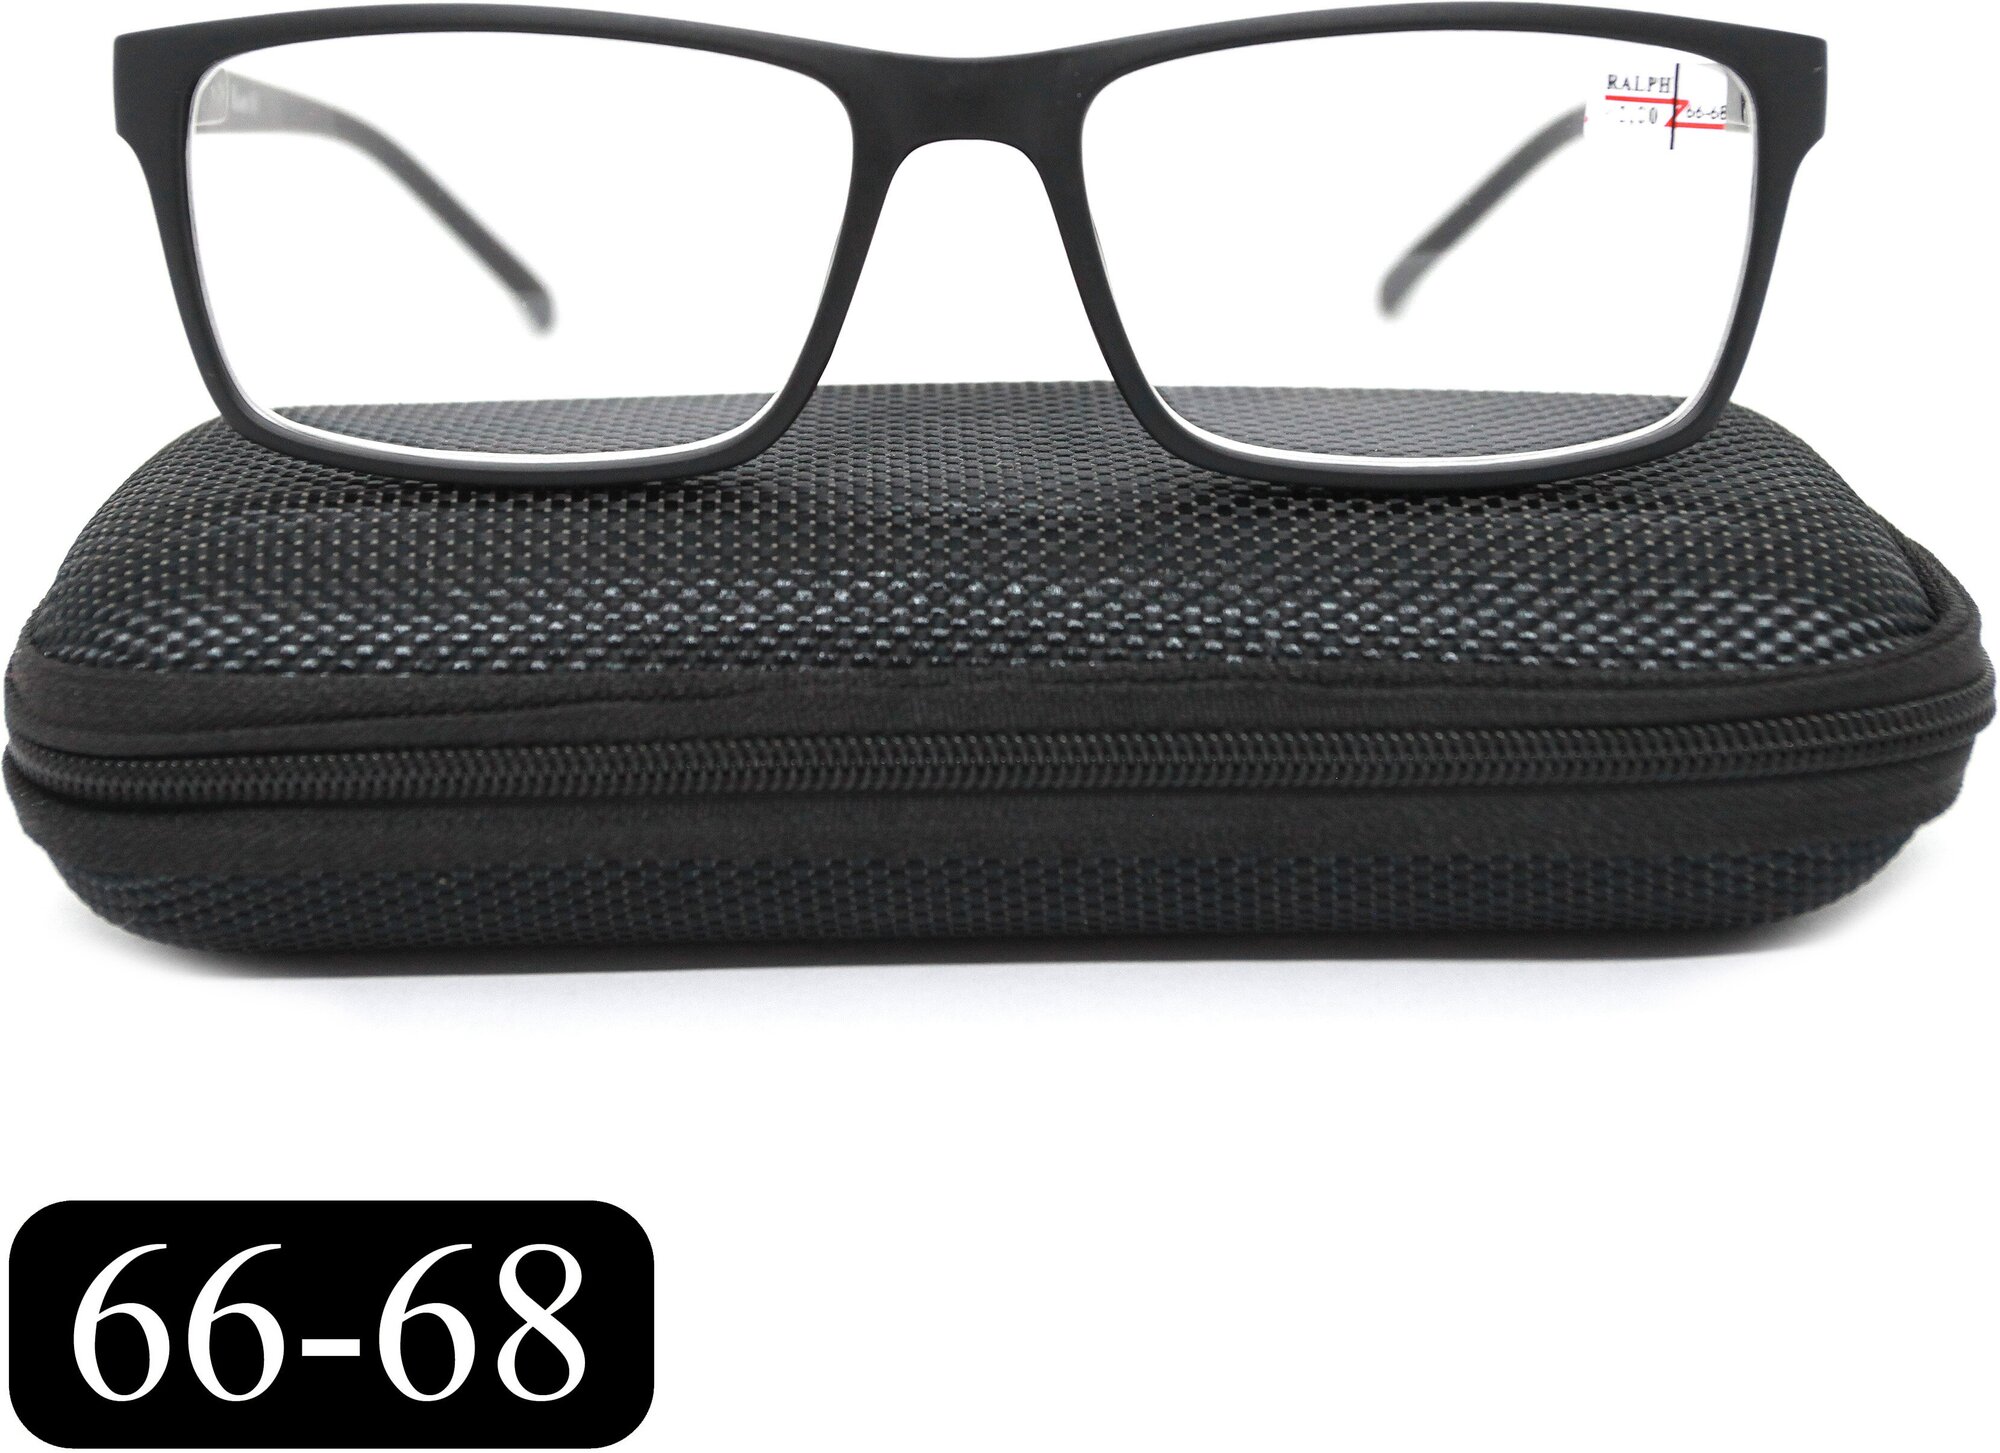 Готовые очки на крупное лицо РЦ 66-68 (+2.75) RALPH 0491-C1, с футляром, цвет черный, линзы пластик